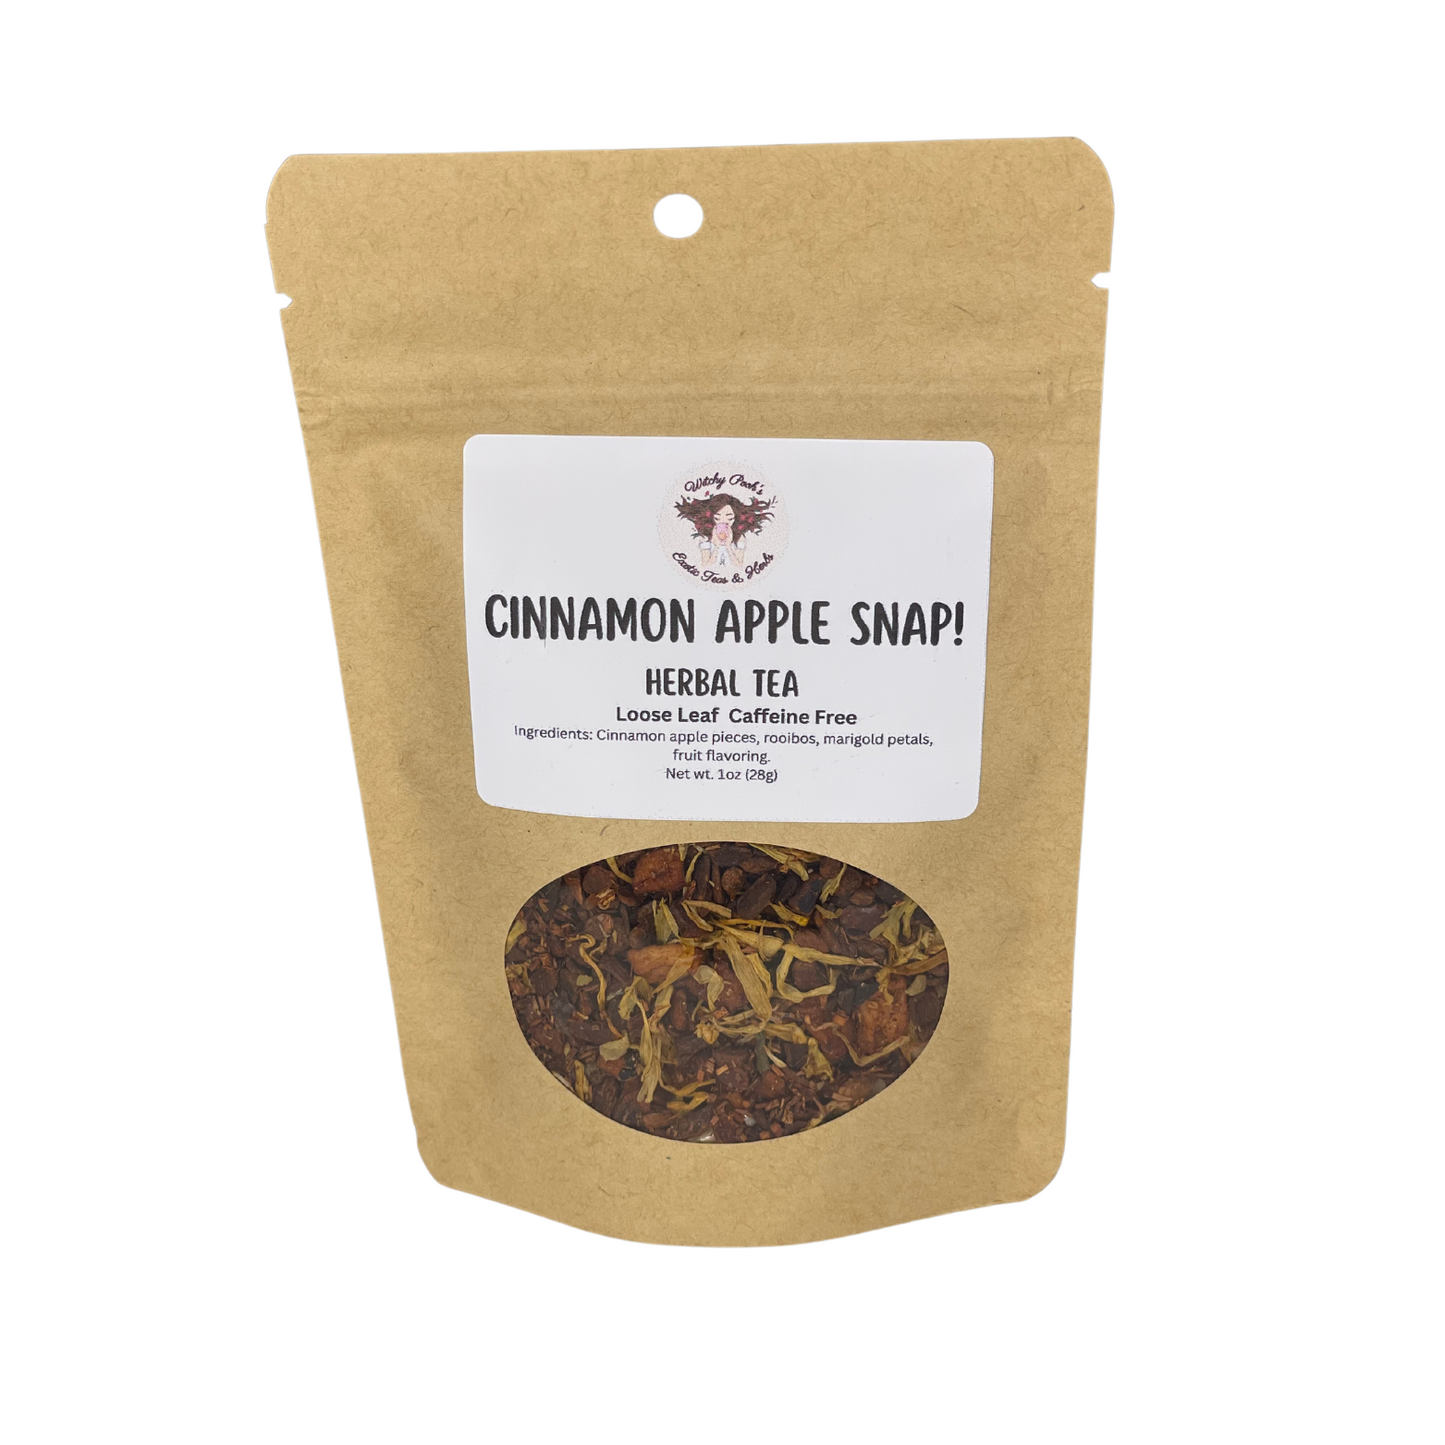 Cinnamon Apple Snap! Herbal Loose Leaf Tea